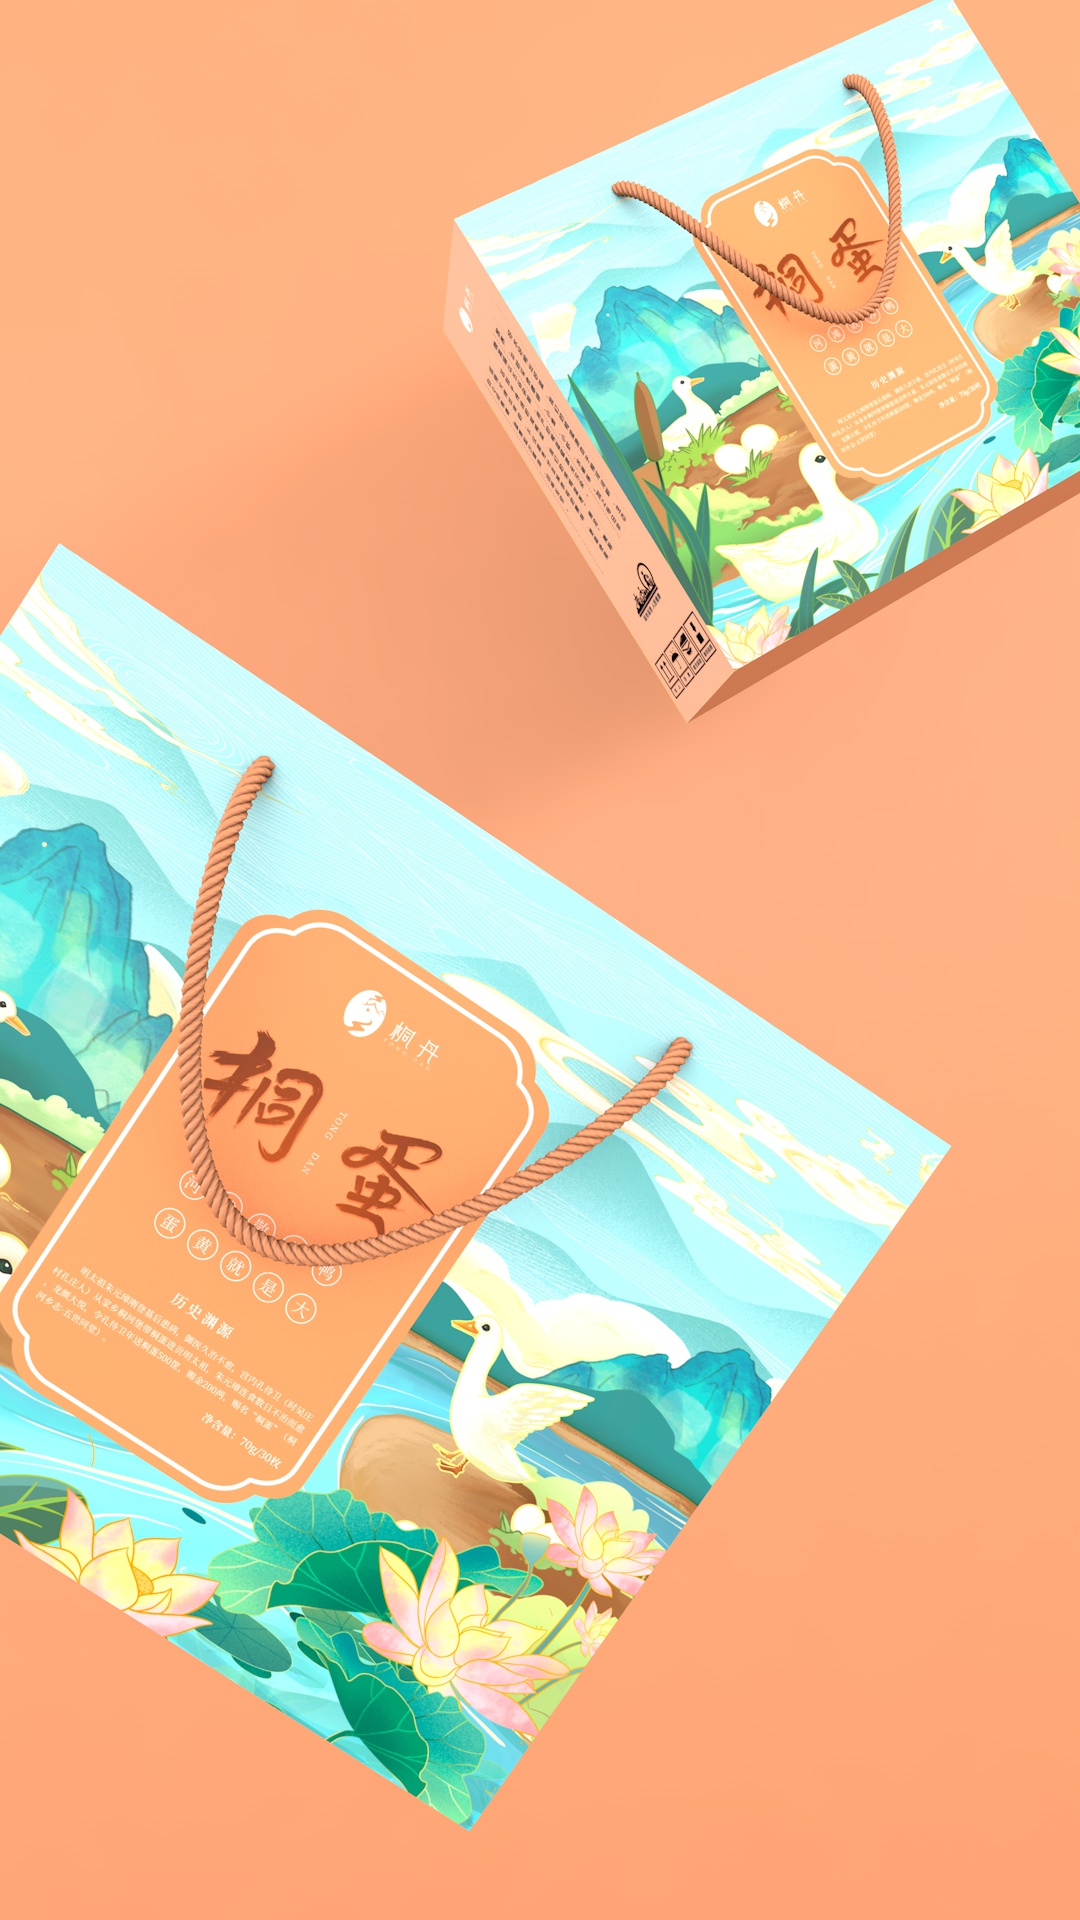 南阳特产桐蛋品牌系列产品，用设计为非遗工艺项目品牌赋能